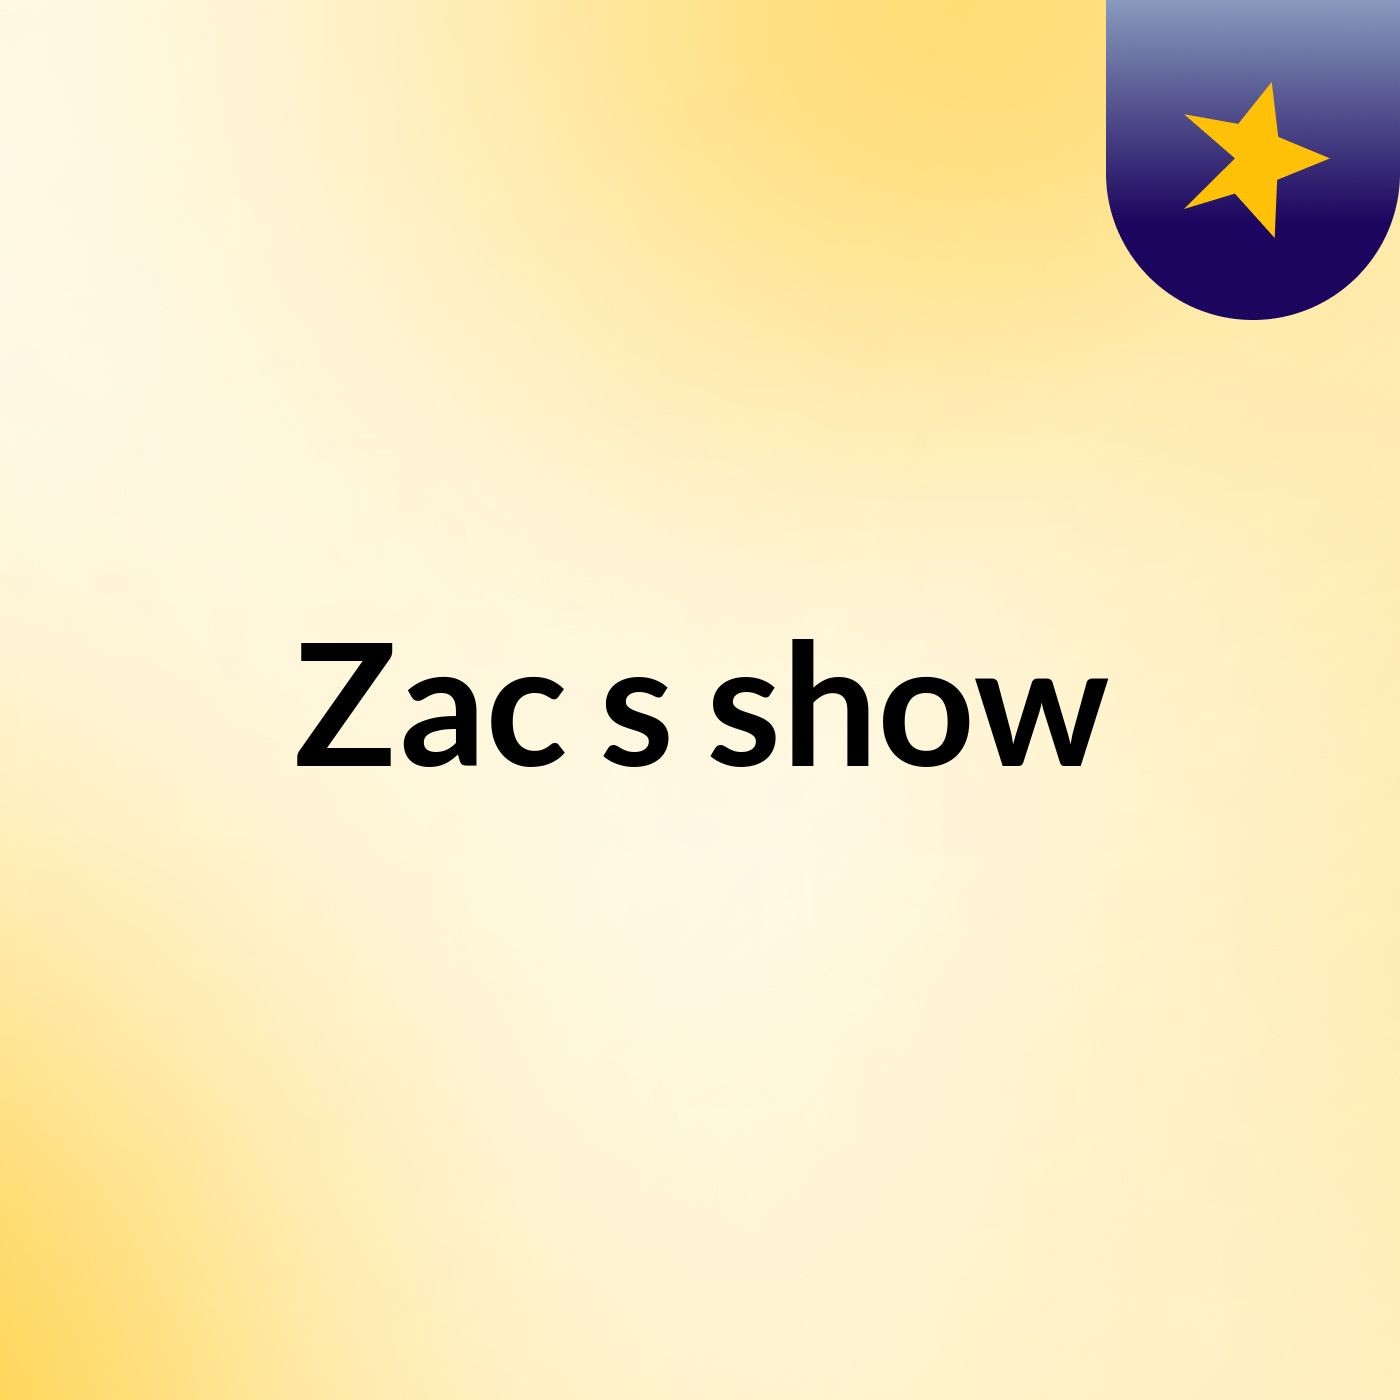 Zac's show